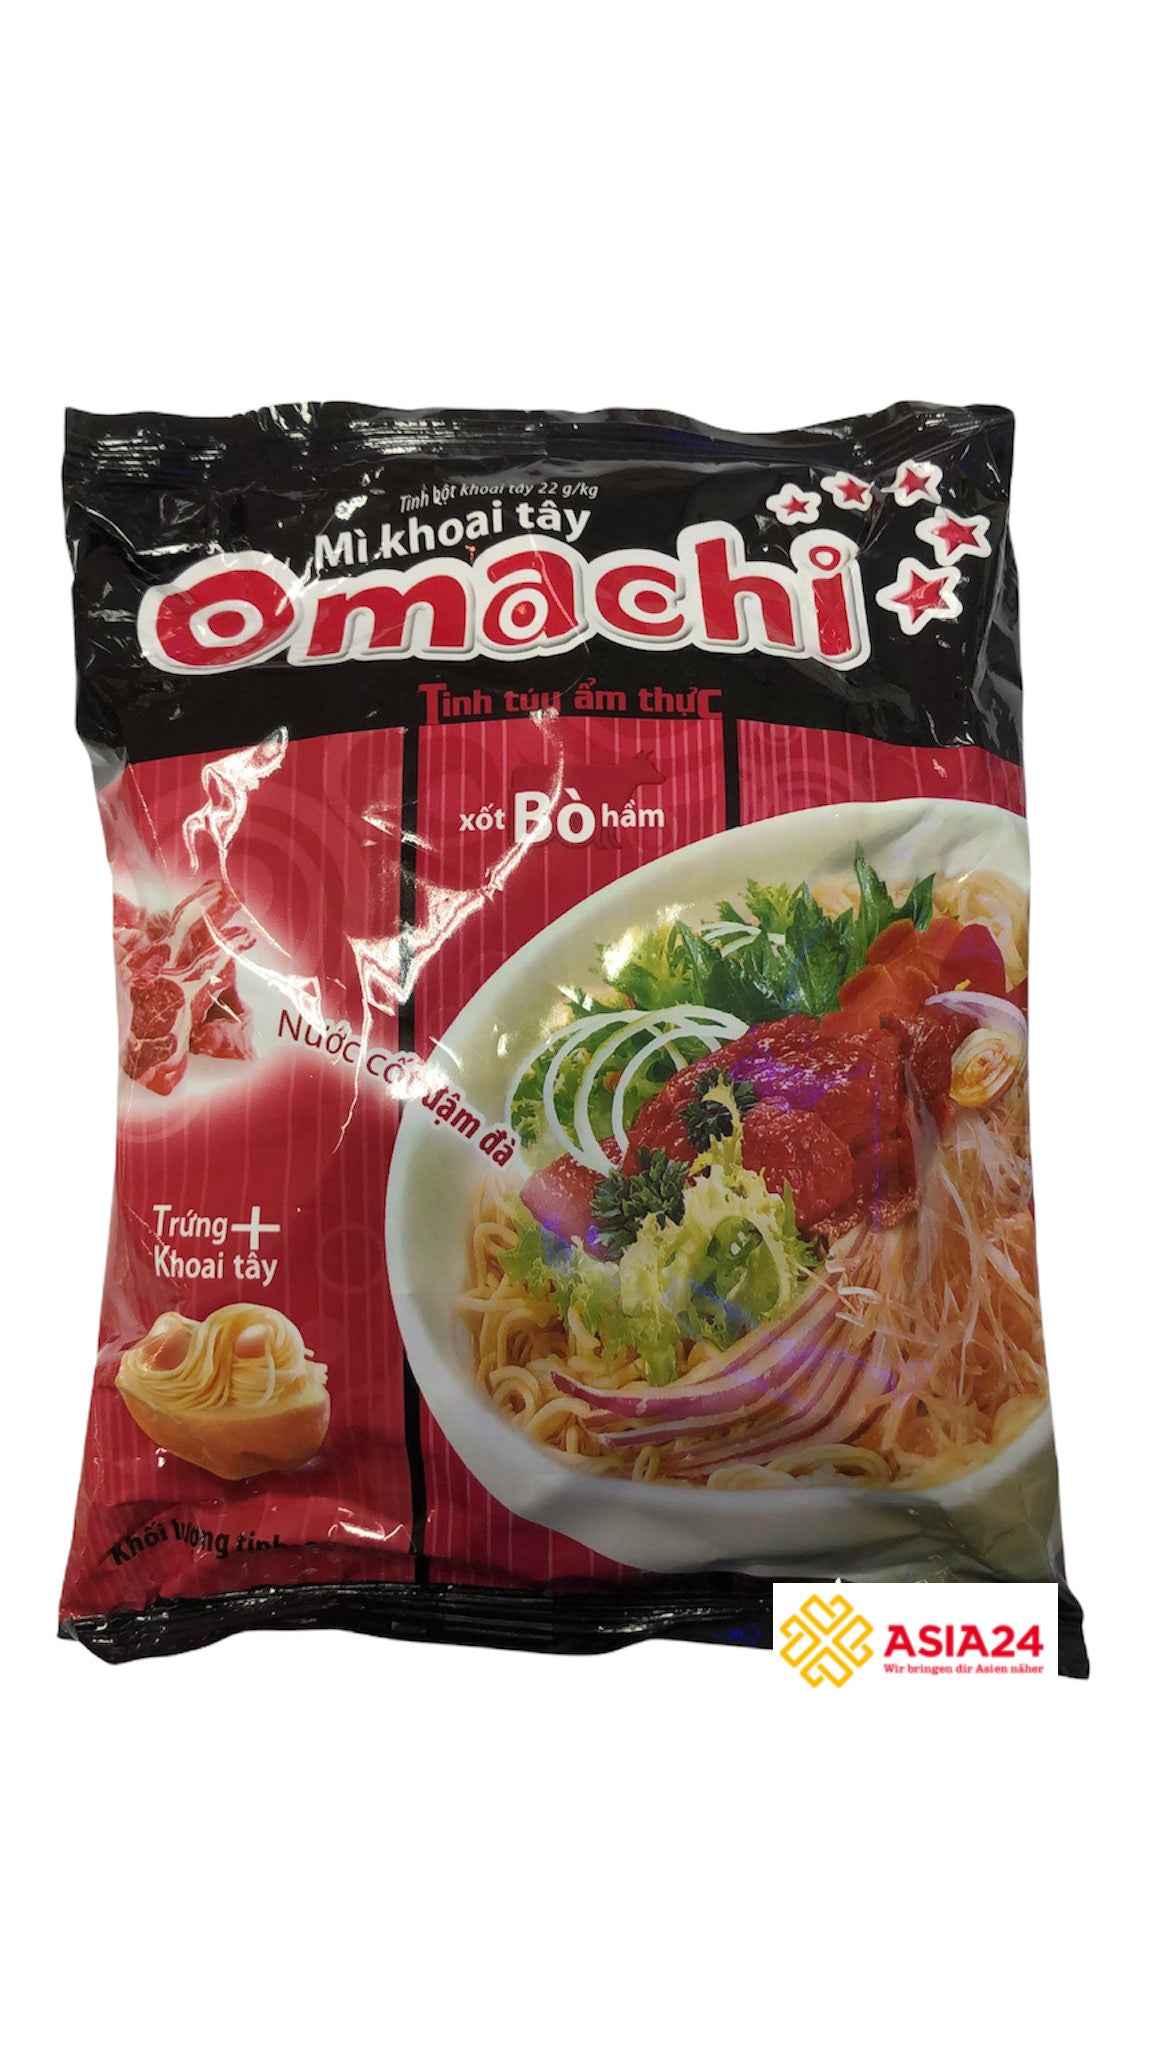 Instantnudeln Omachi Rind 80g - Mì ăn liền Omachi bò hầm 80g